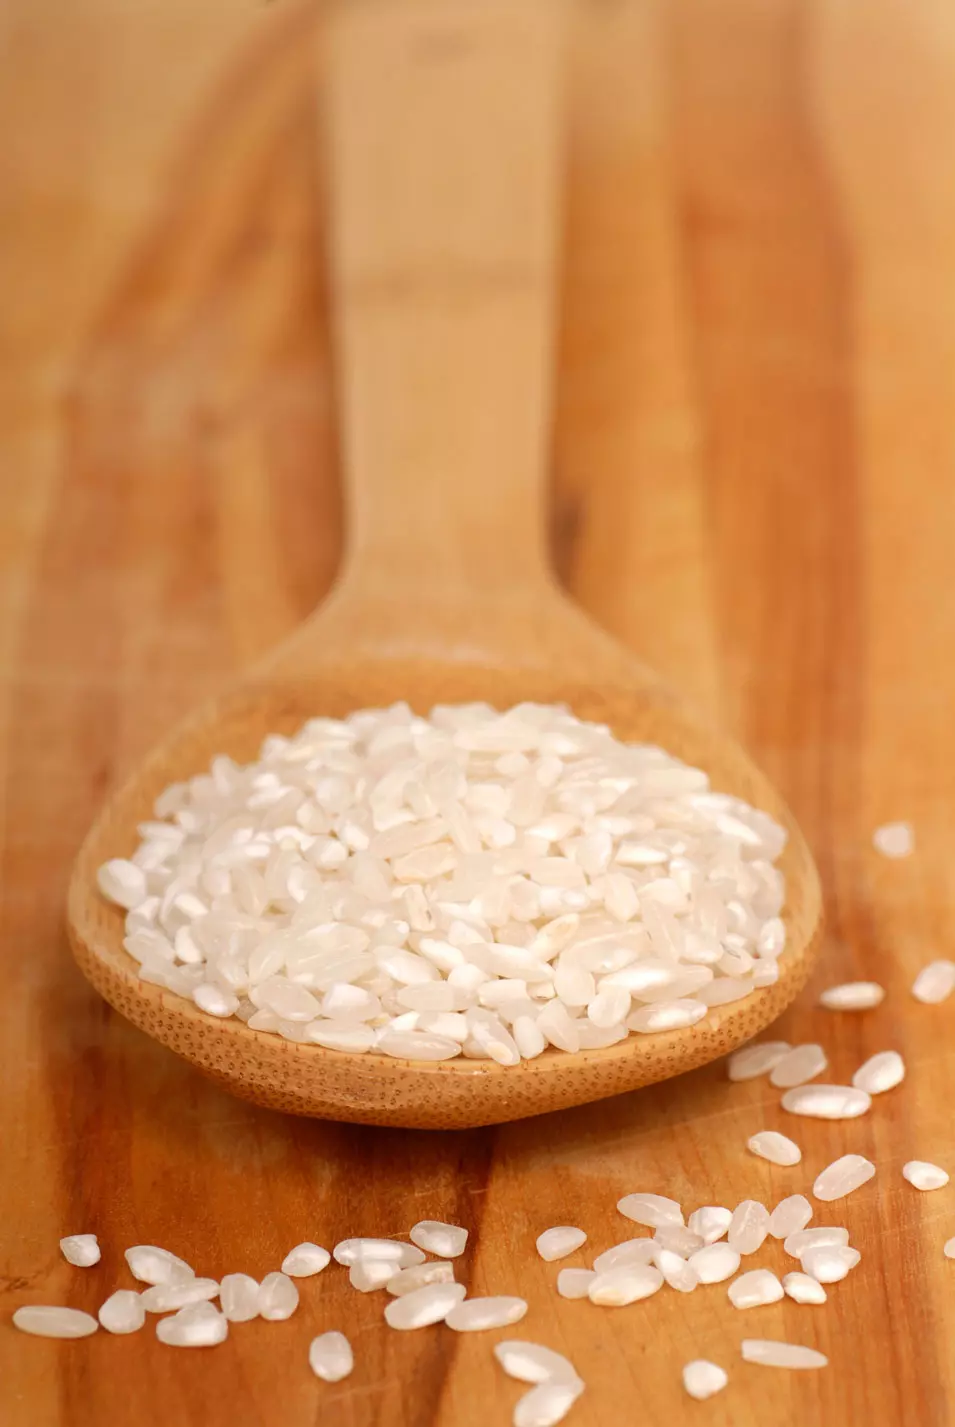 אורז דביק או שתיית מי אורז יסייעו לגוף להתגבר על השלשול